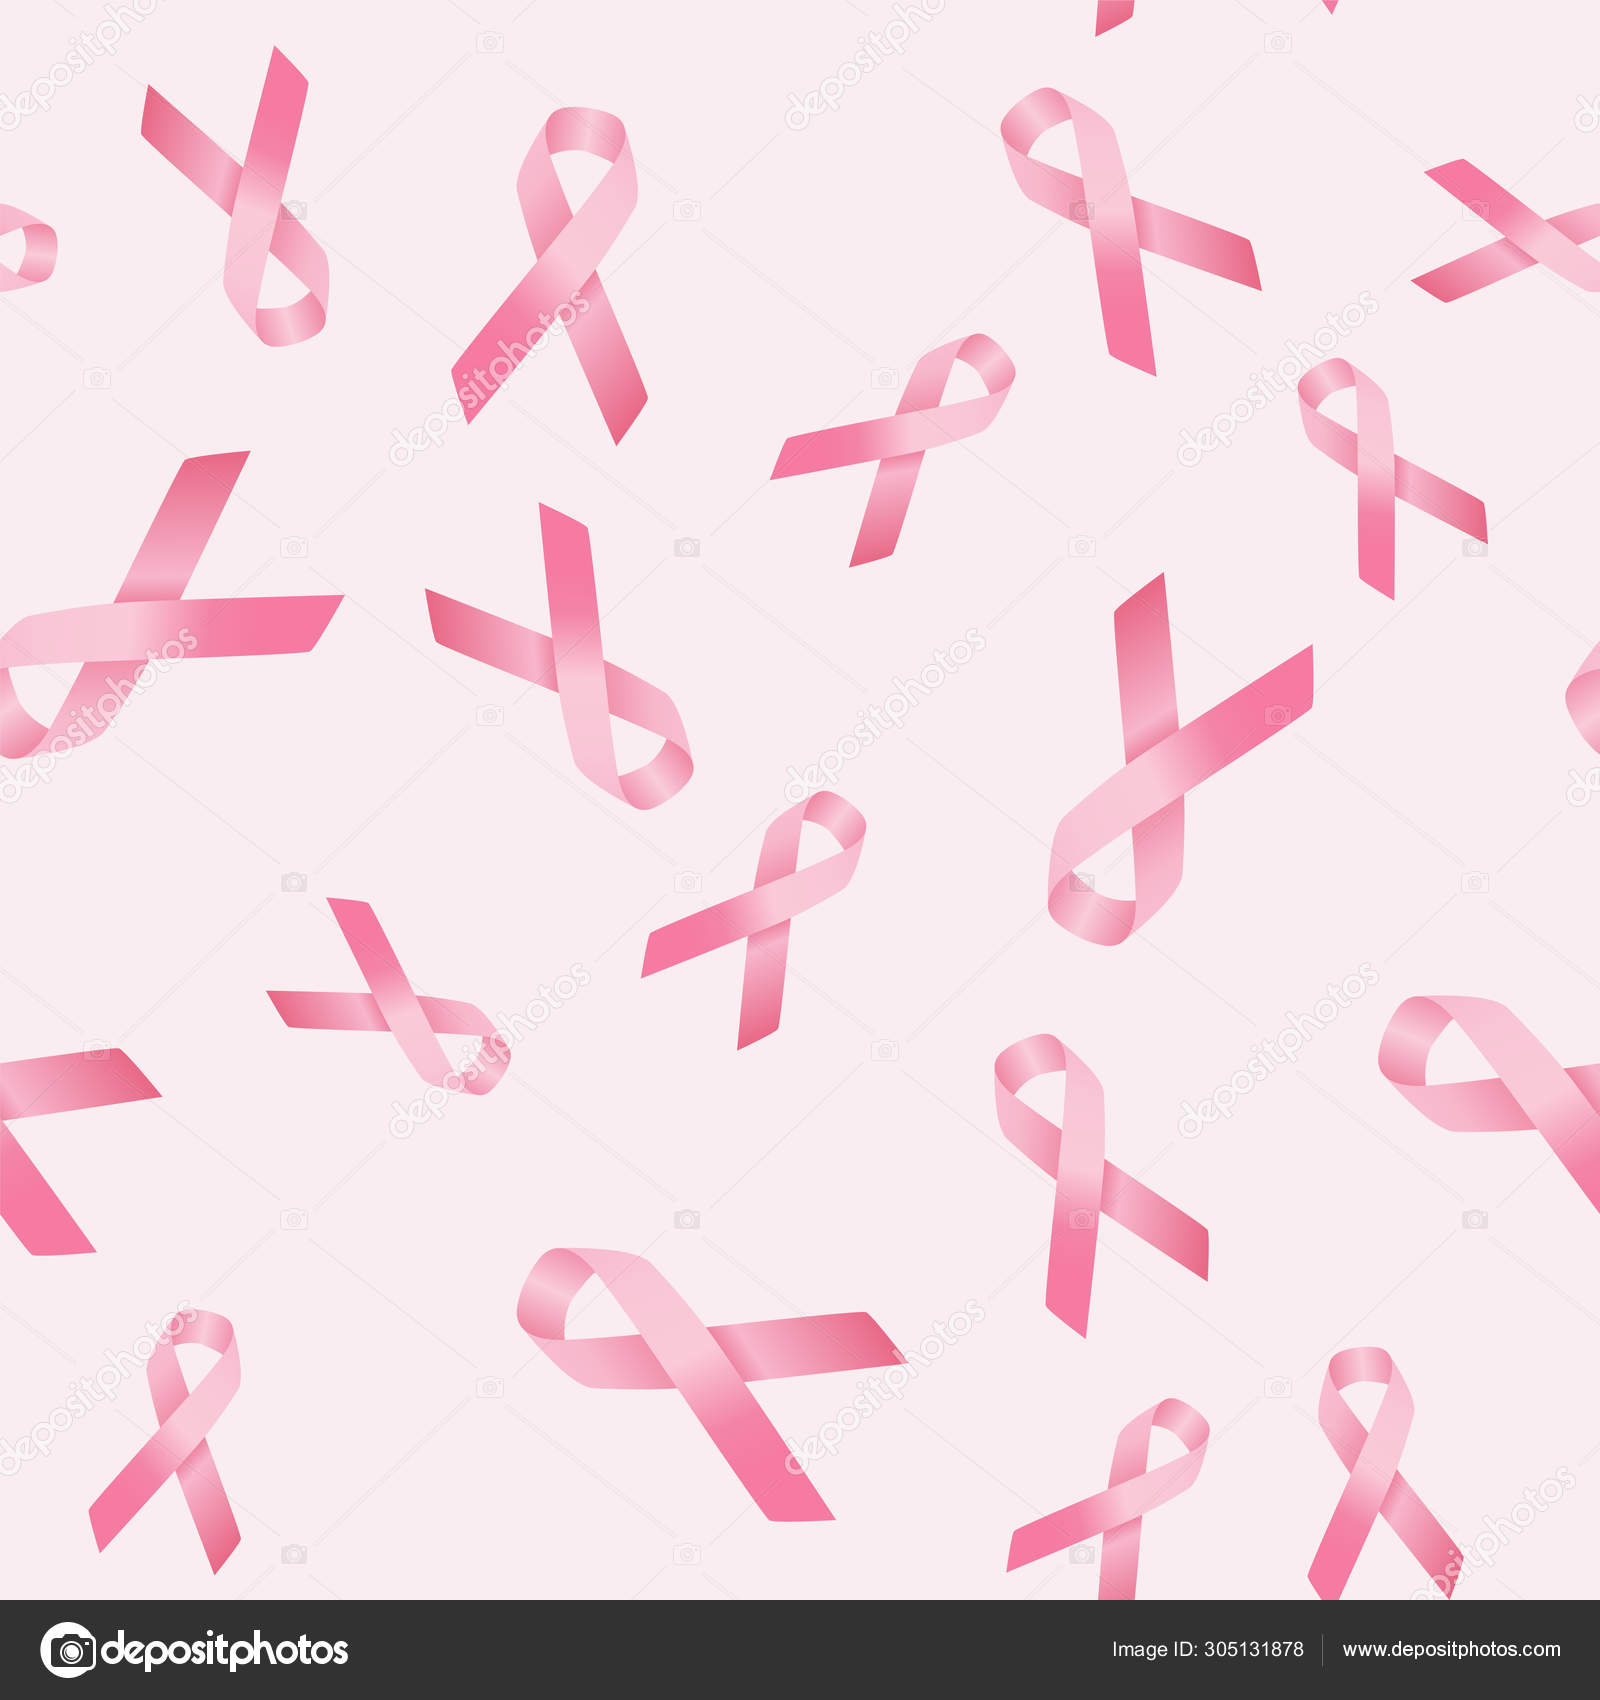 Mẫu hoa văn vòng đeo ngực hồng nhân văn ung thư là biểu tượng của sự cảm thông và tình nguyện tham gia vào những hoạt động chống lại ung thư vú. Hãy xem hình ảnh này để tìm hiểu thêm về tầm quan trọng của việc đồng hành cùng những người mắc bệnh và làm thế nào chúng ta có thể ủng hộ cho việc nghiên cứu và chăm sóc sức khỏe của họ.